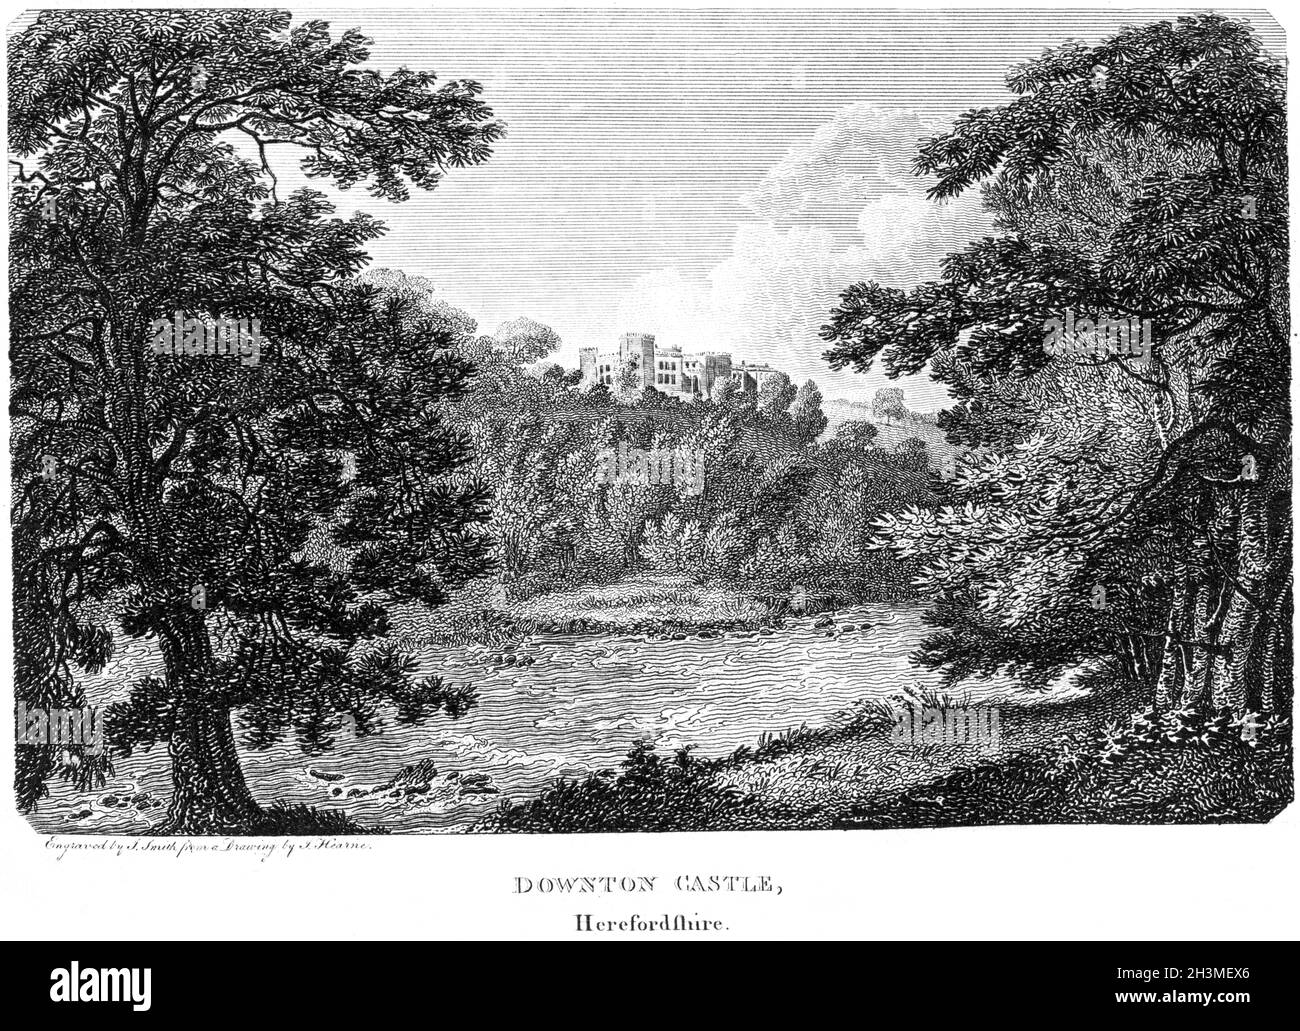 Ein Stich von Downton Castle, Herefordshire UK, gescannt in hoher Auflösung von einem Buch, das 1812 gedruckt wurde. Für urheberrechtlich frei gehalten. Stockfoto